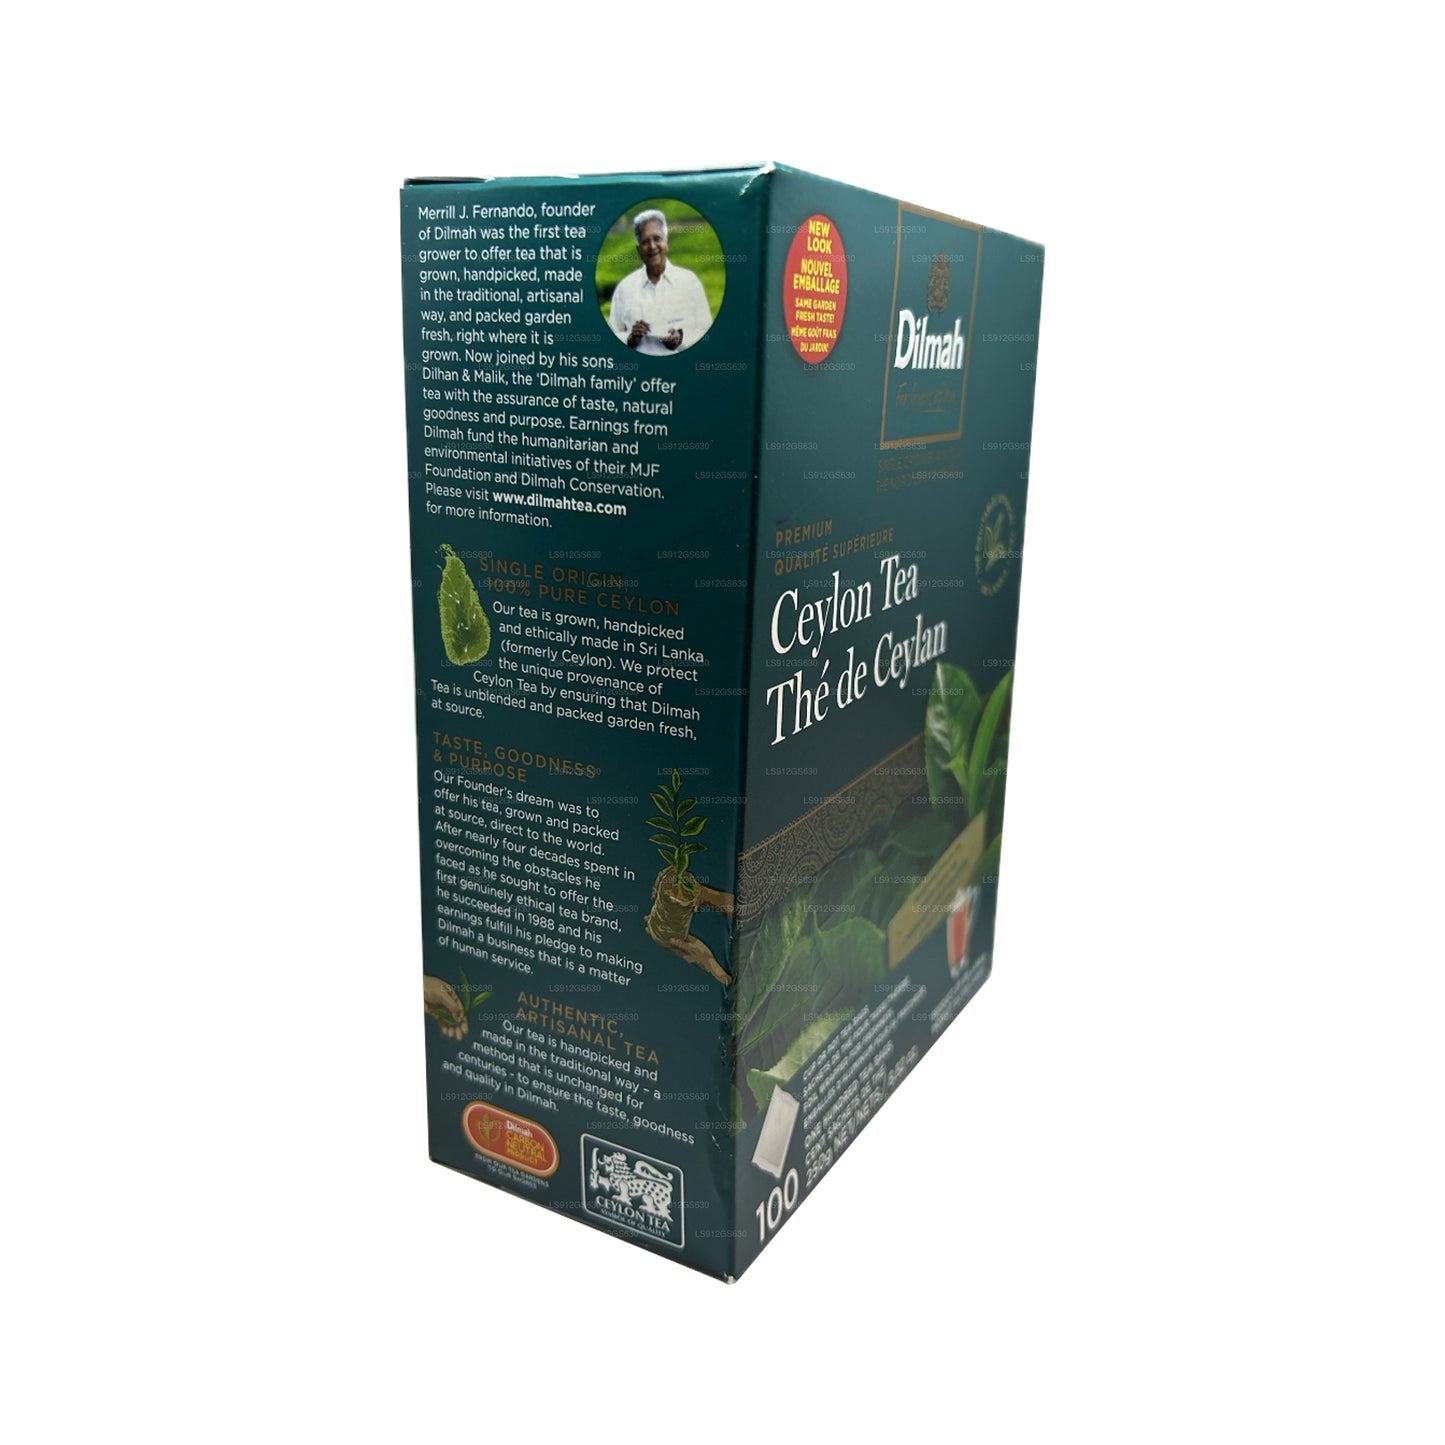 Цейлонский чай Dilmah Premium (250 г) 100 пакетиков без бирки